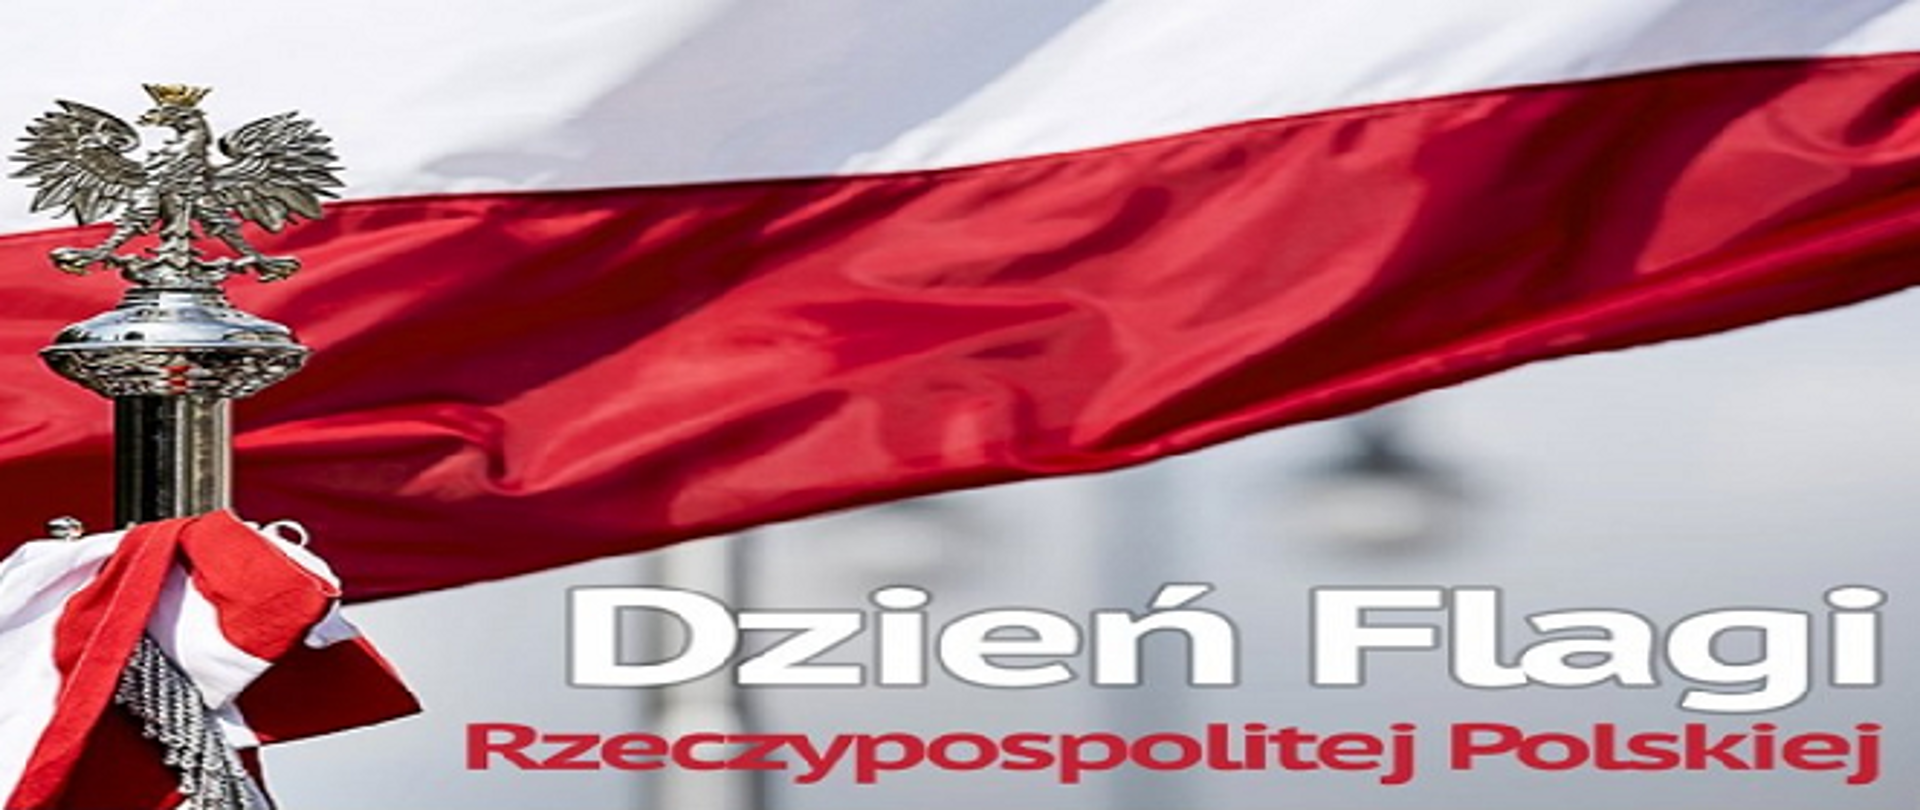 Na zdjęciu widać napis w kolorystyce biało czerwonej "Dzień Flagi Rzeczypospolitej Polskiej na tle fragmentu flagi państwowej . Z lewej strony widoczny na drzewcu zakończonym metalowym okuciem orzeł .